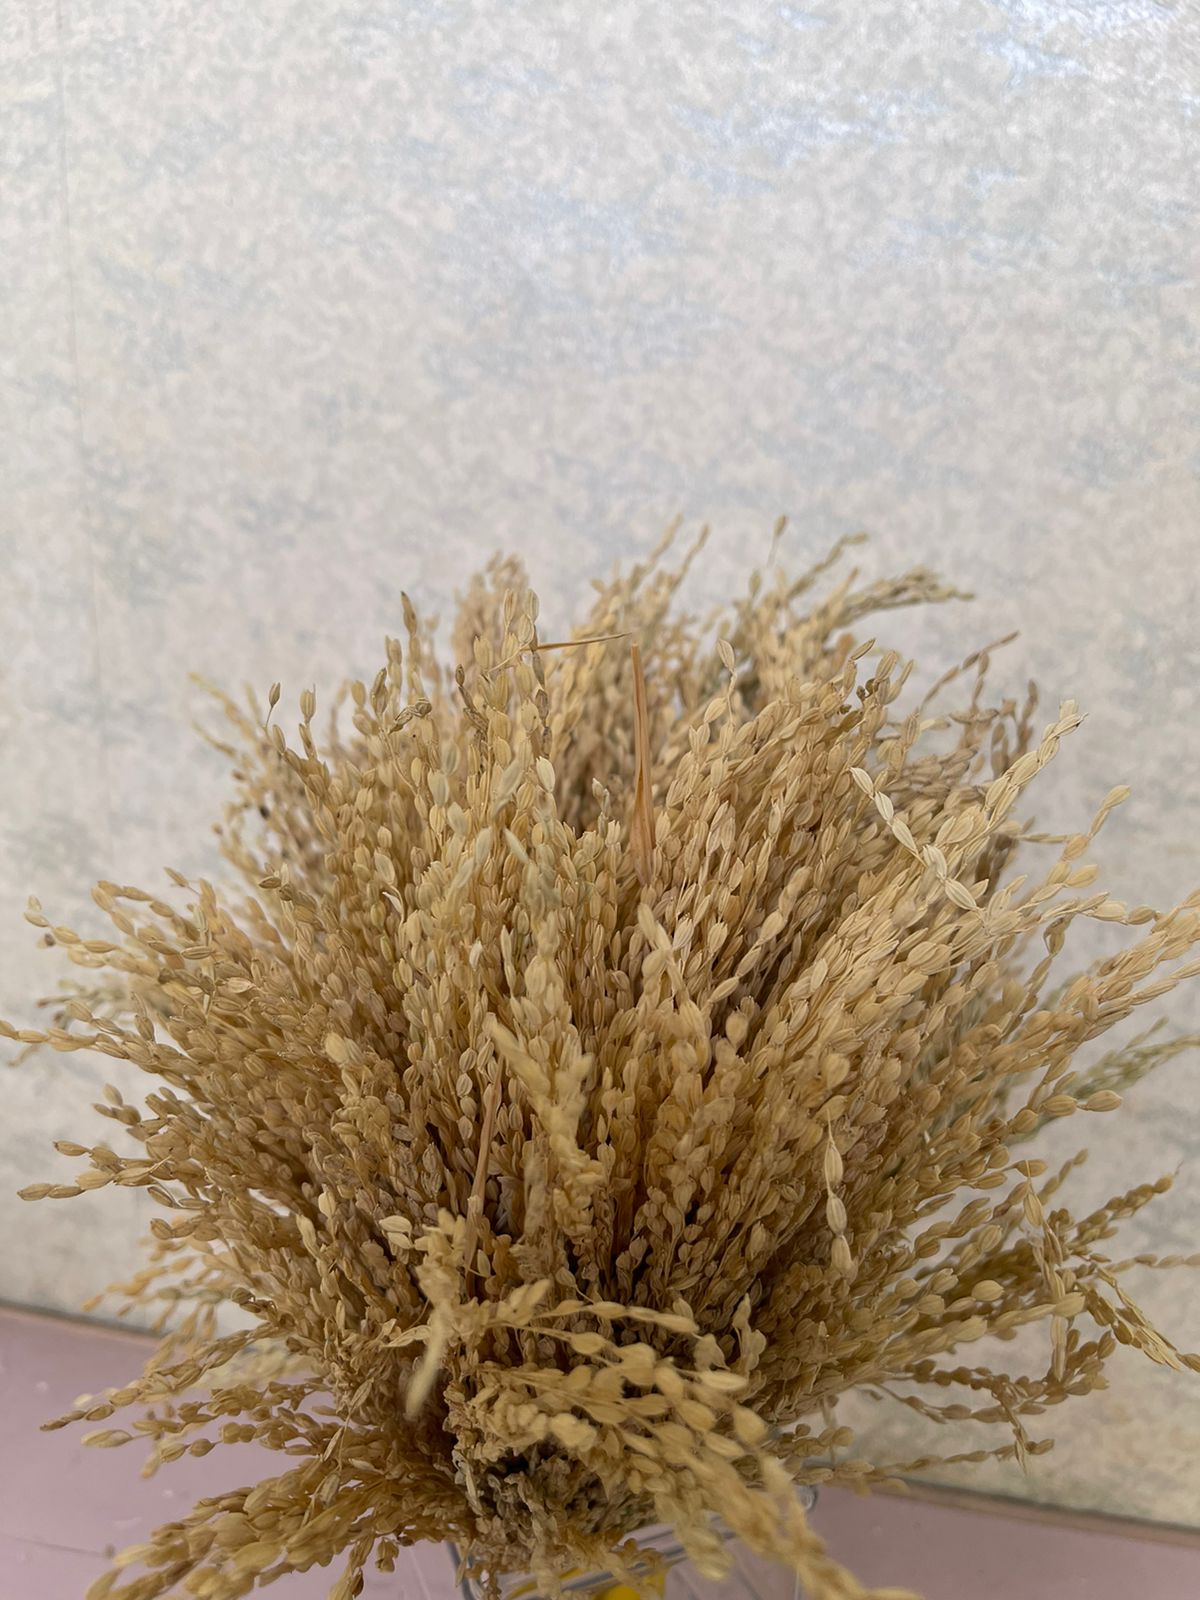 Dried paddy bunch (H:30cm W:20cm)